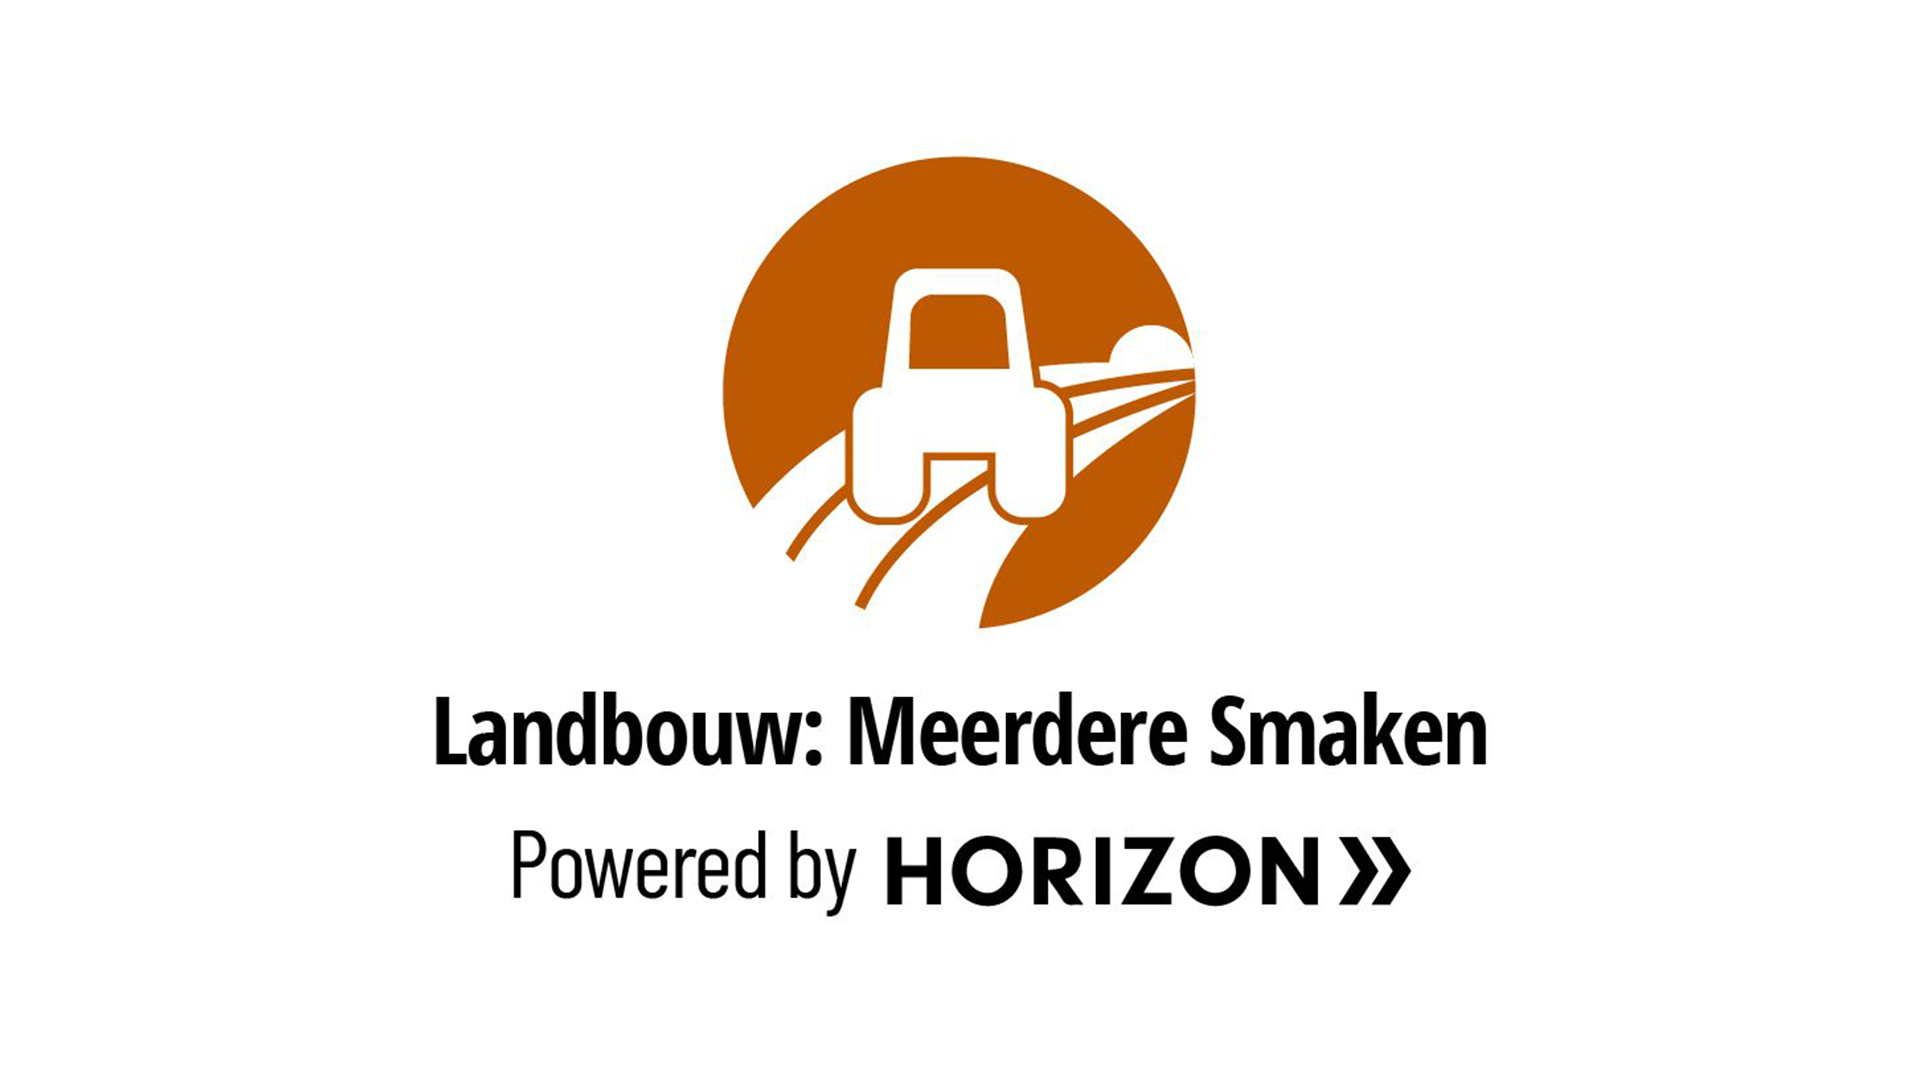 Landbouw Meerdere Smaken - powered by Horizon